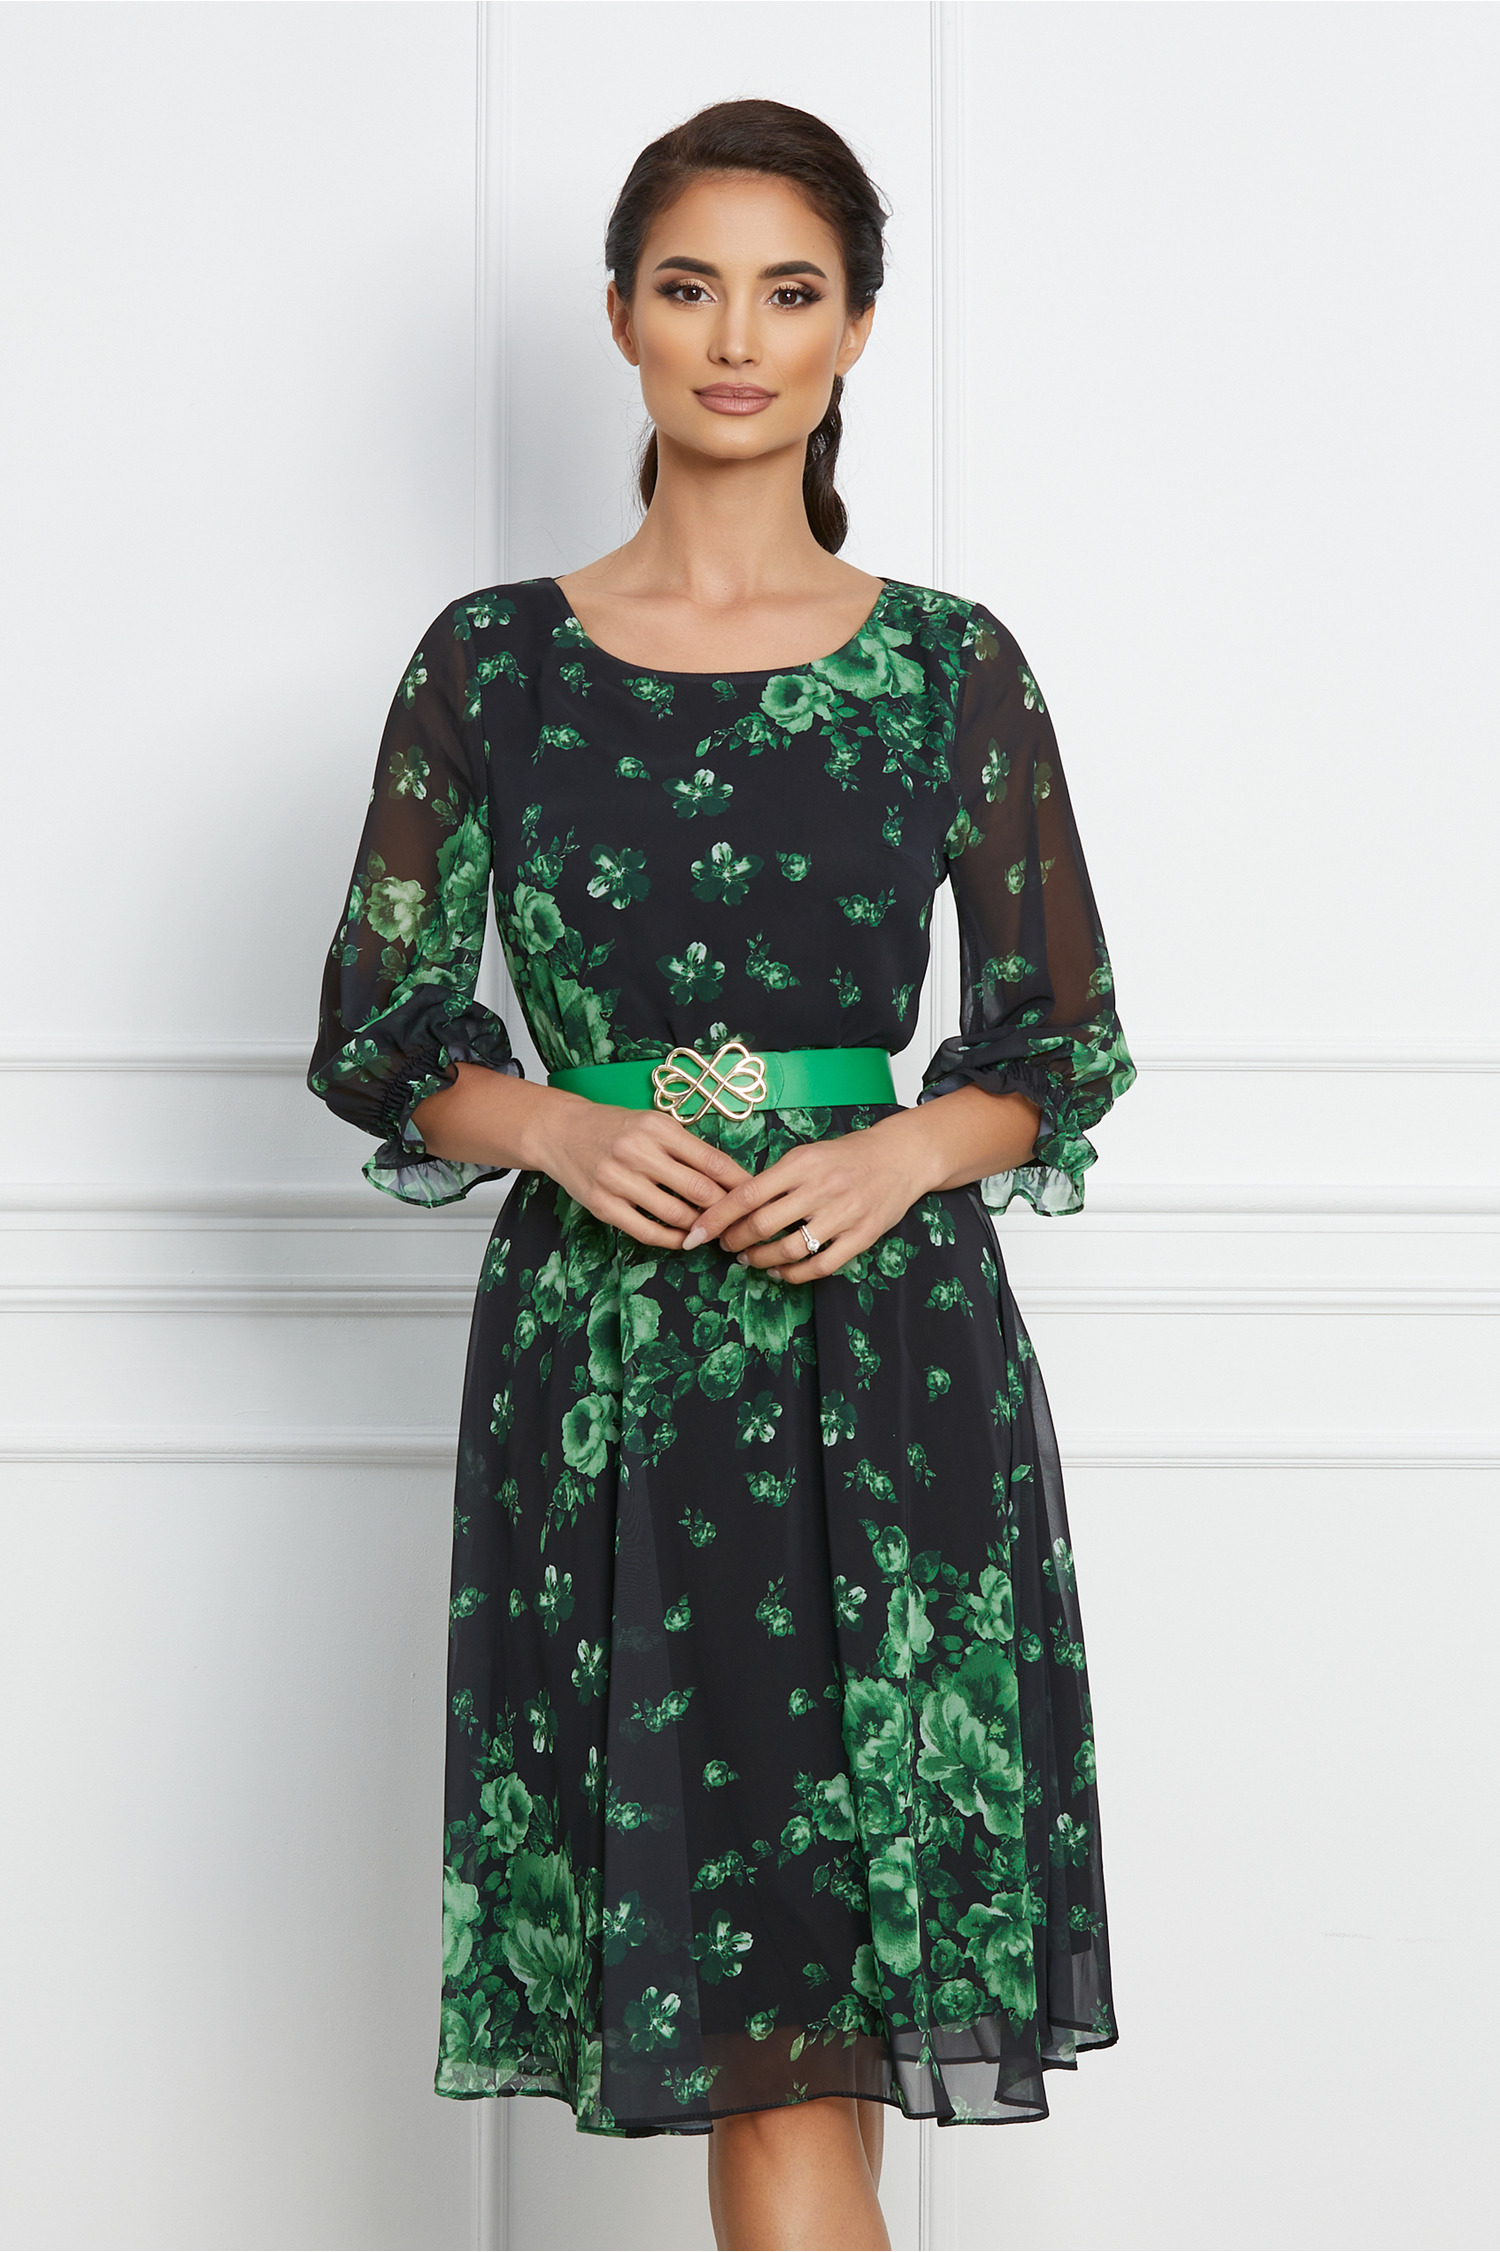 Rochie neagra cu imprimeuri florale verzi si curea in talie